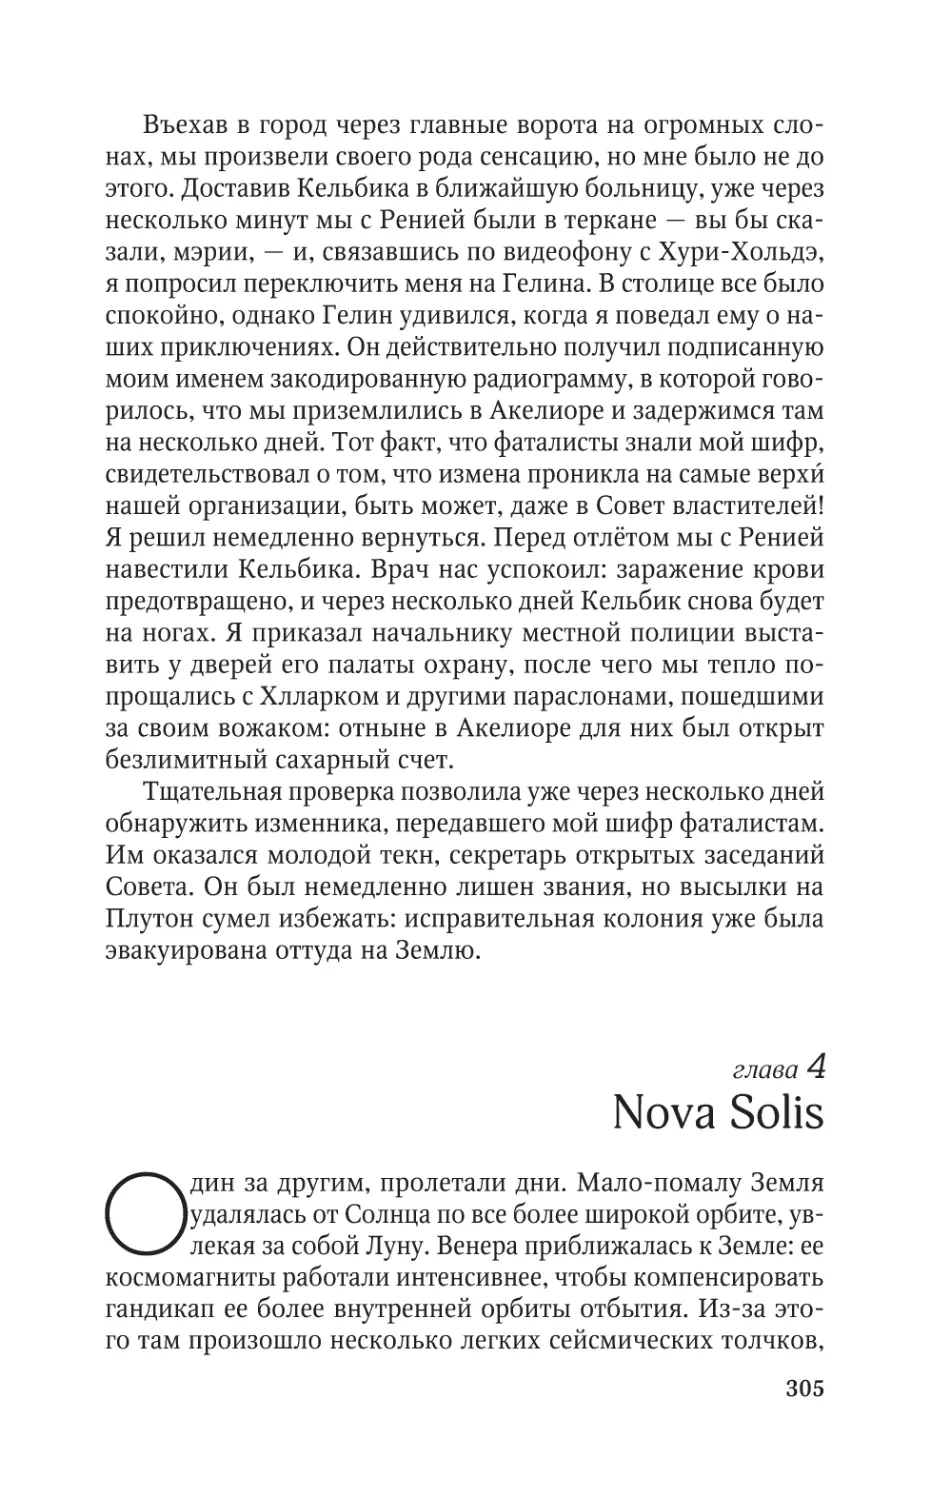 Глава 4. Nova Solis